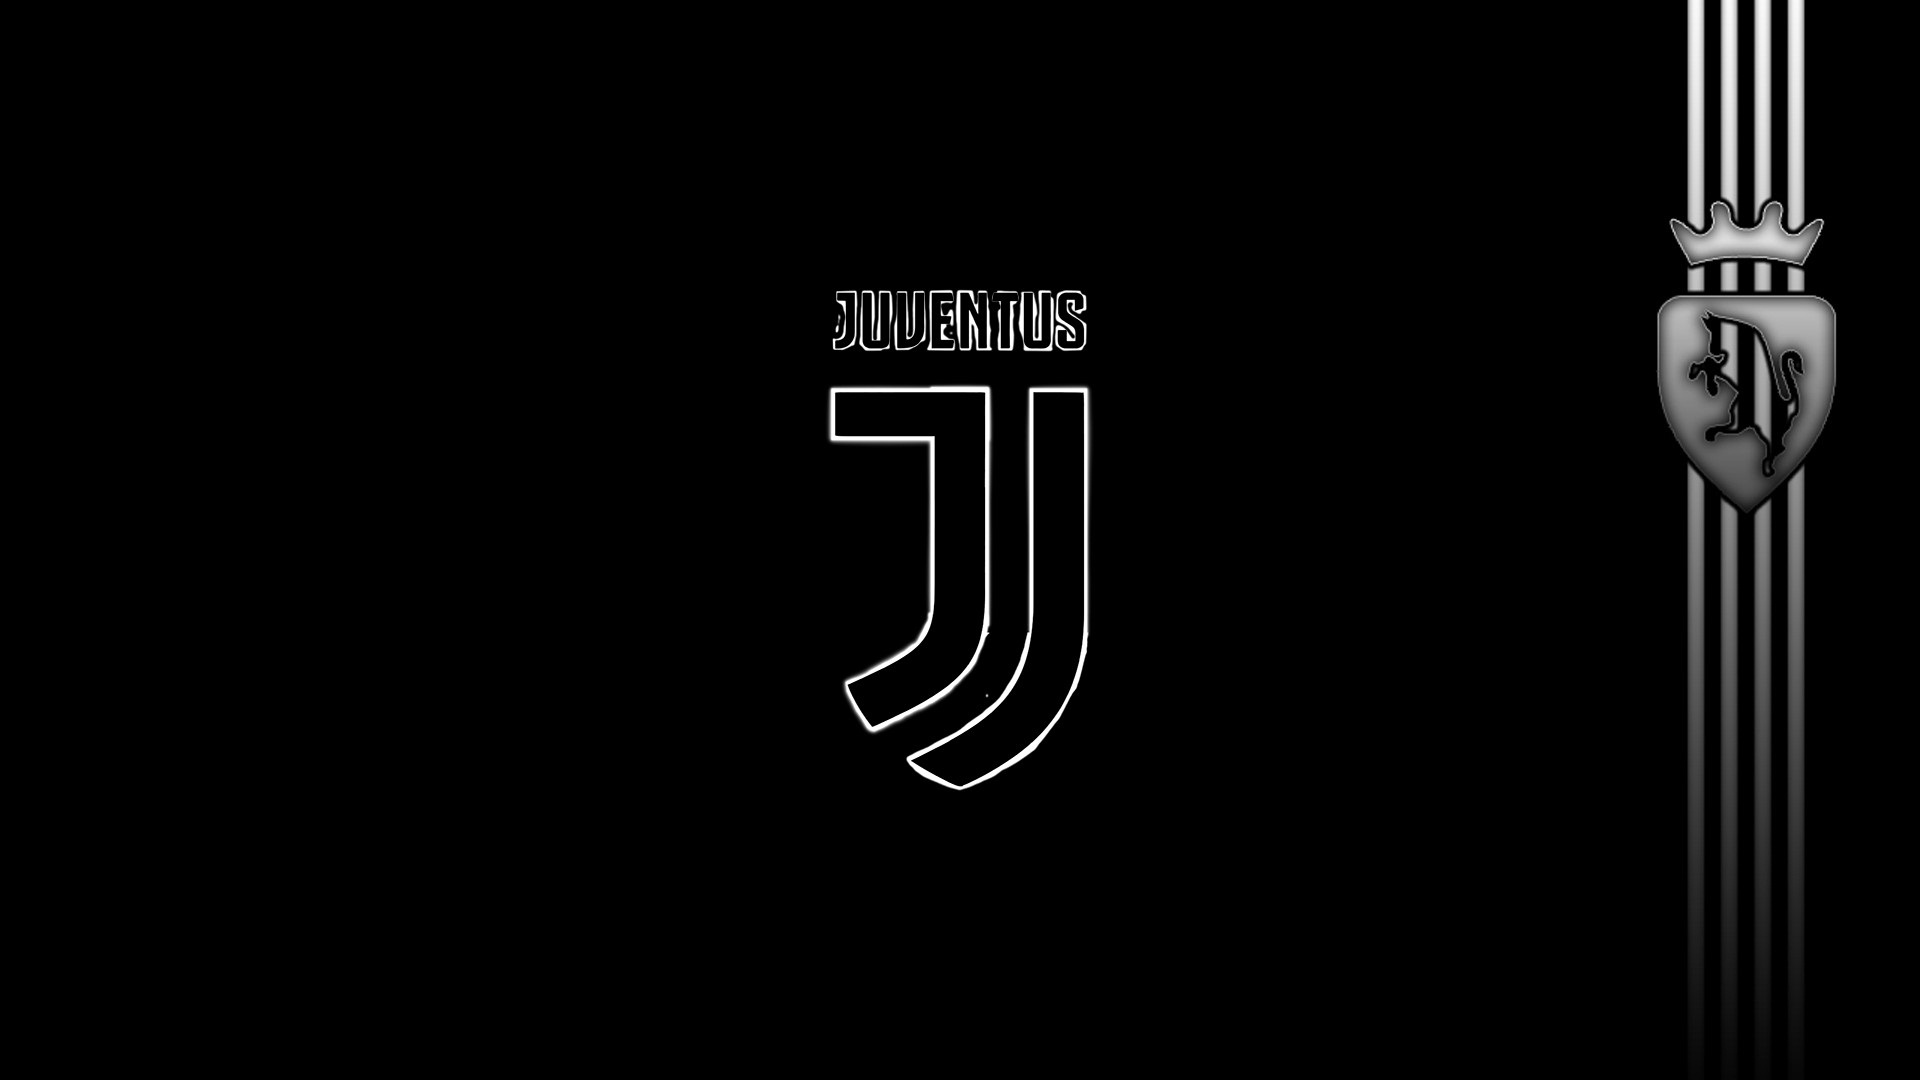 Juventus logo wallpaper 4k free doownload